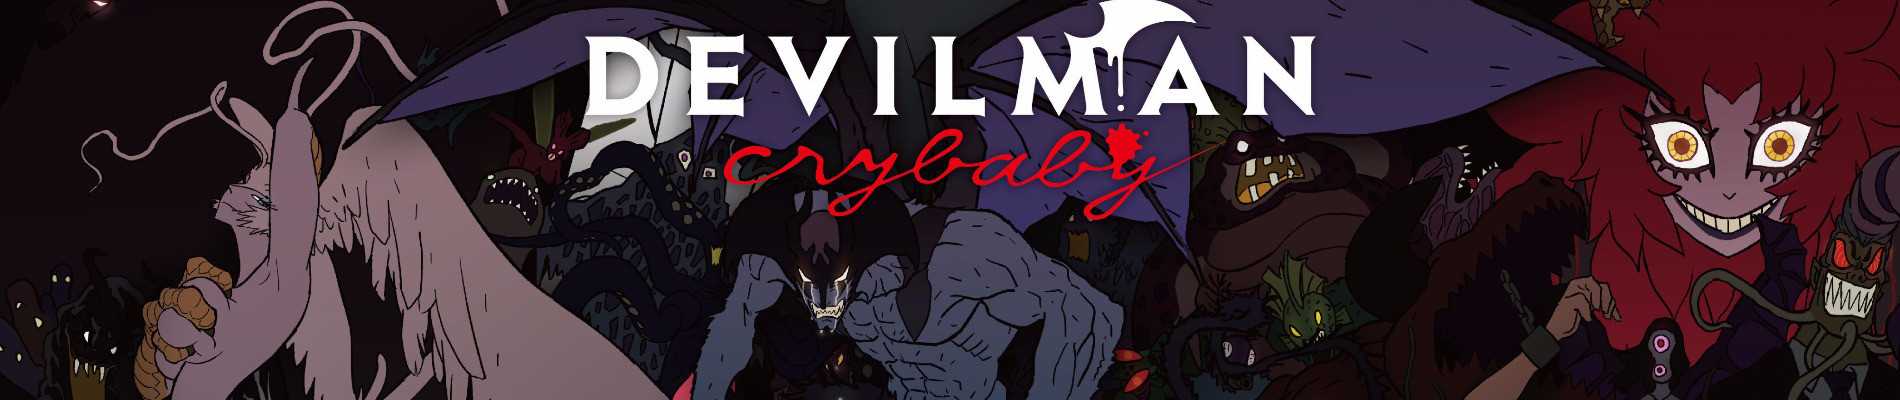 Devilman: crybaby